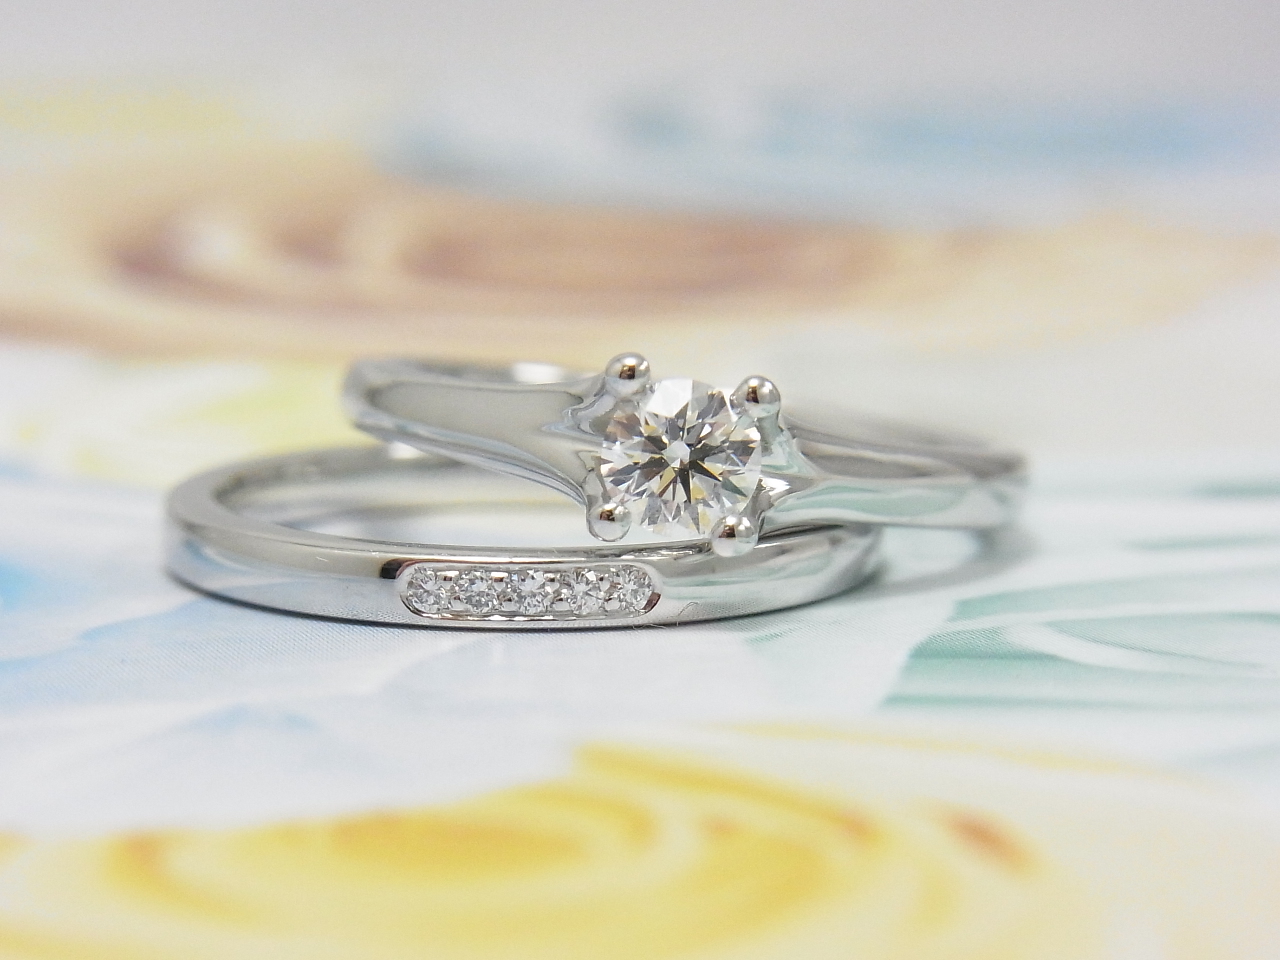 フラー・ジャコーのセットリング☆ミニョン 結婚指輪 - マリッジリング ブライダル 婚約指輪 - エンゲージリング 婚約指輪＆結婚指輪 - セットリング 